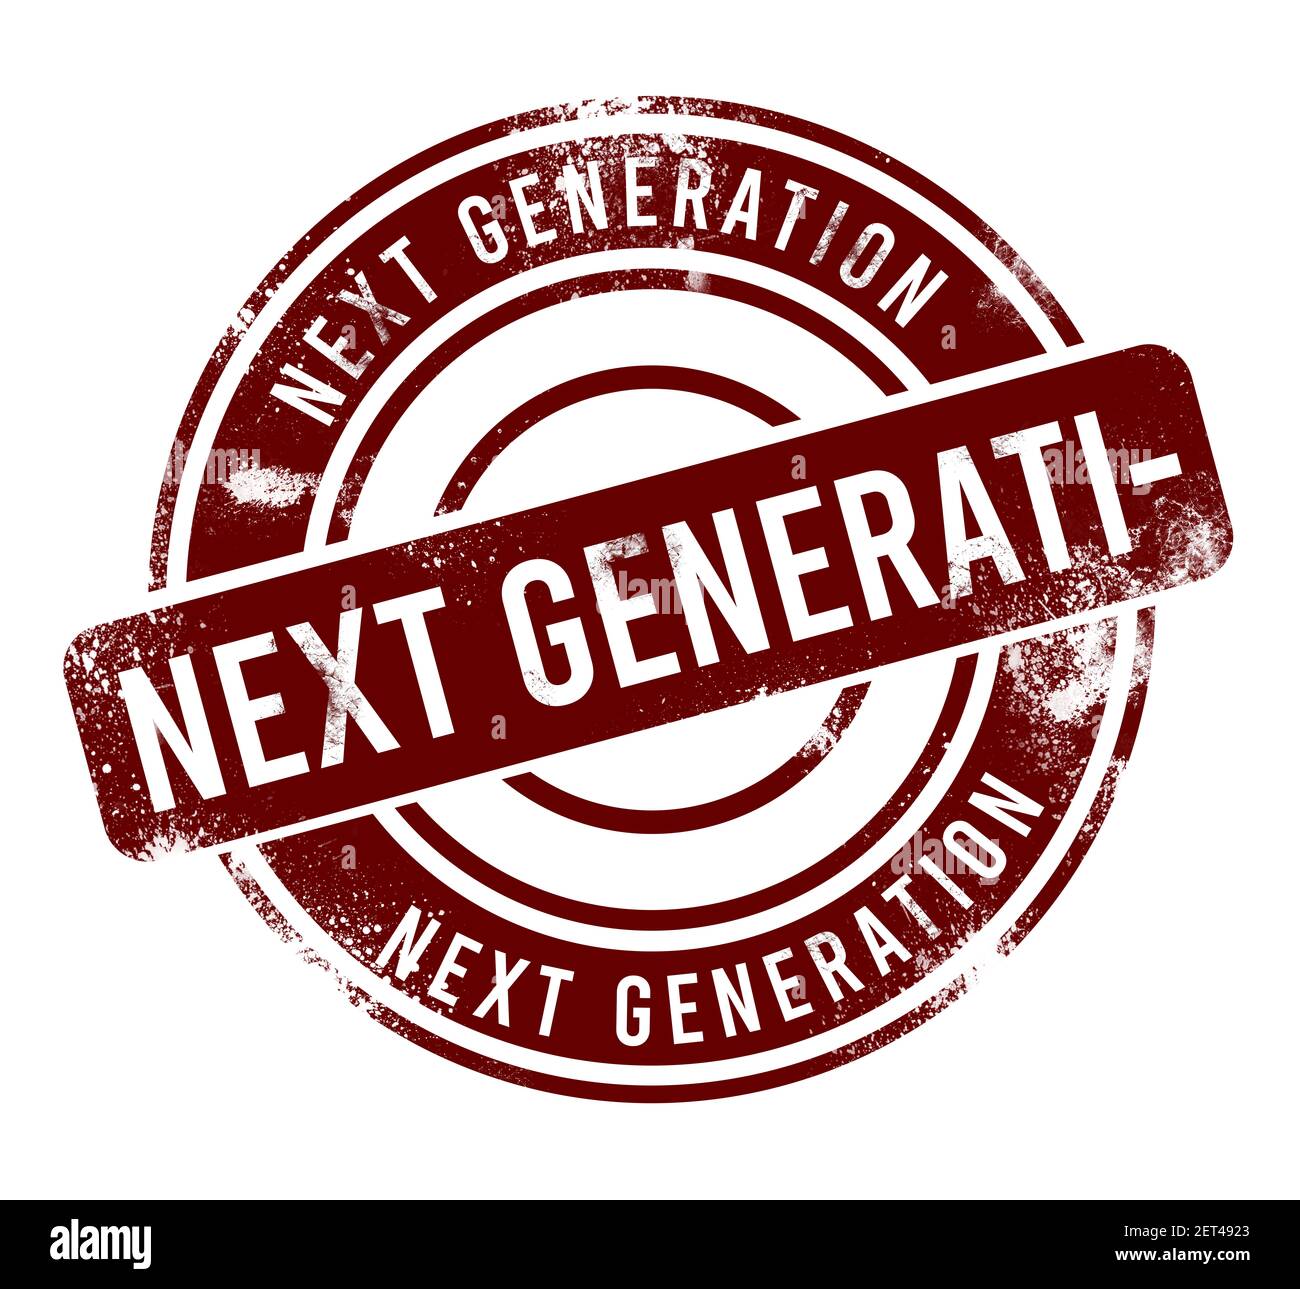 Next generation - red round grunge button, stamp Stock Photo